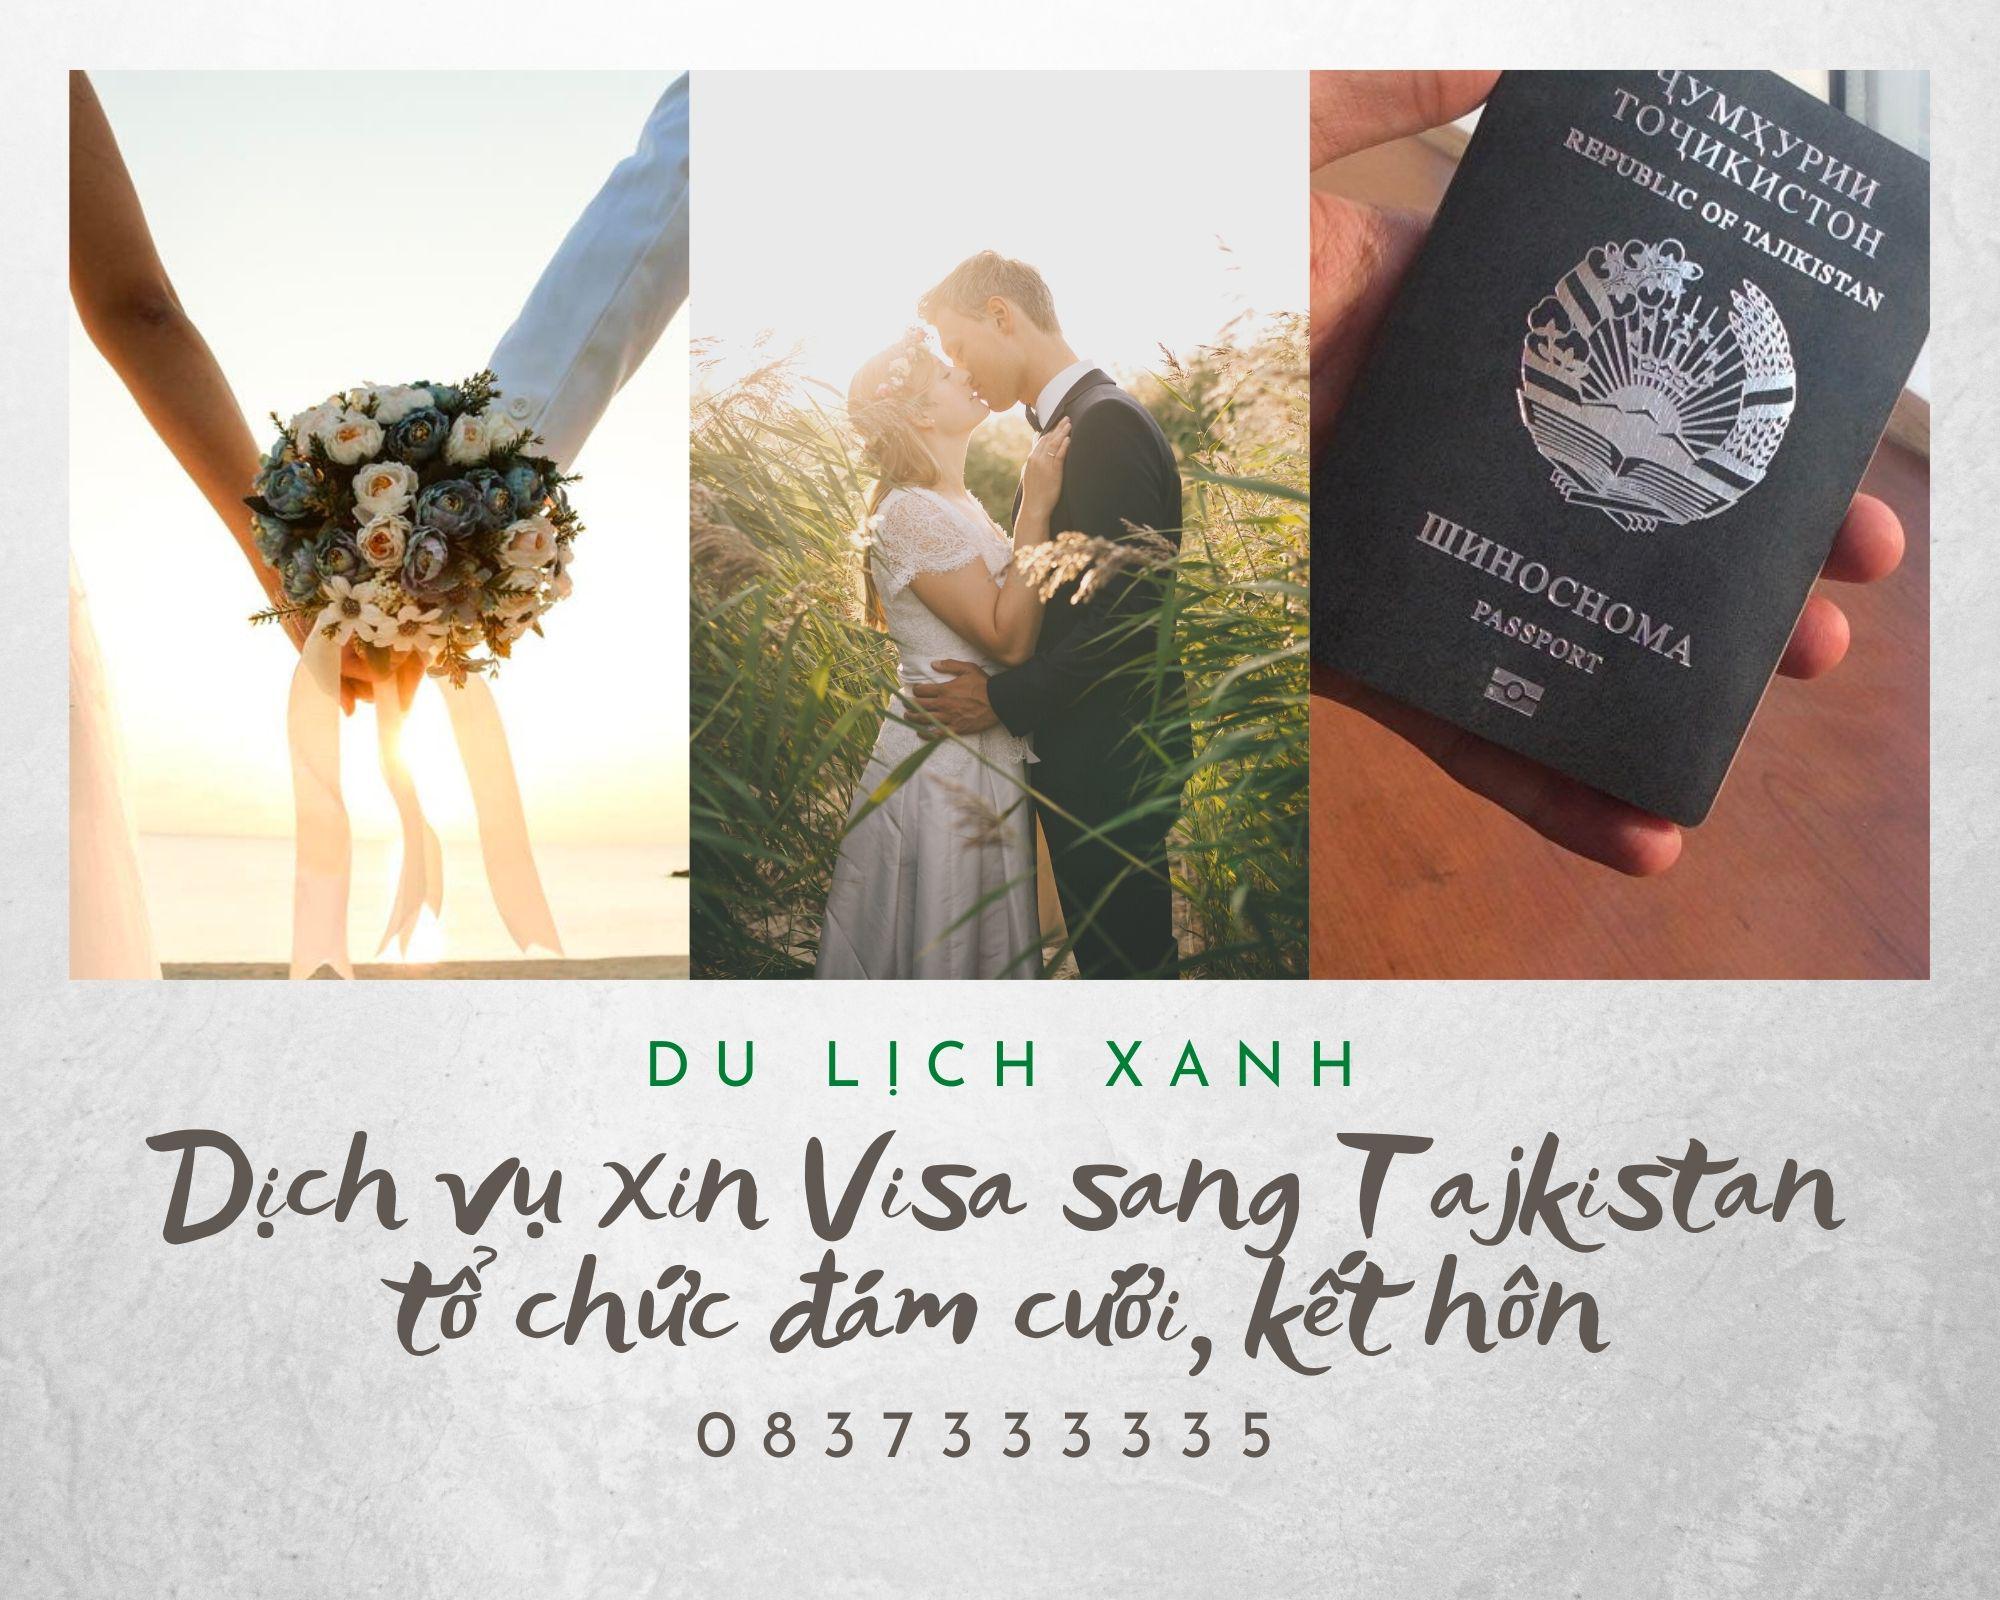 Dịch vụ xin Visa sang Tajikistan tổ chức đám cưới, kết hôn